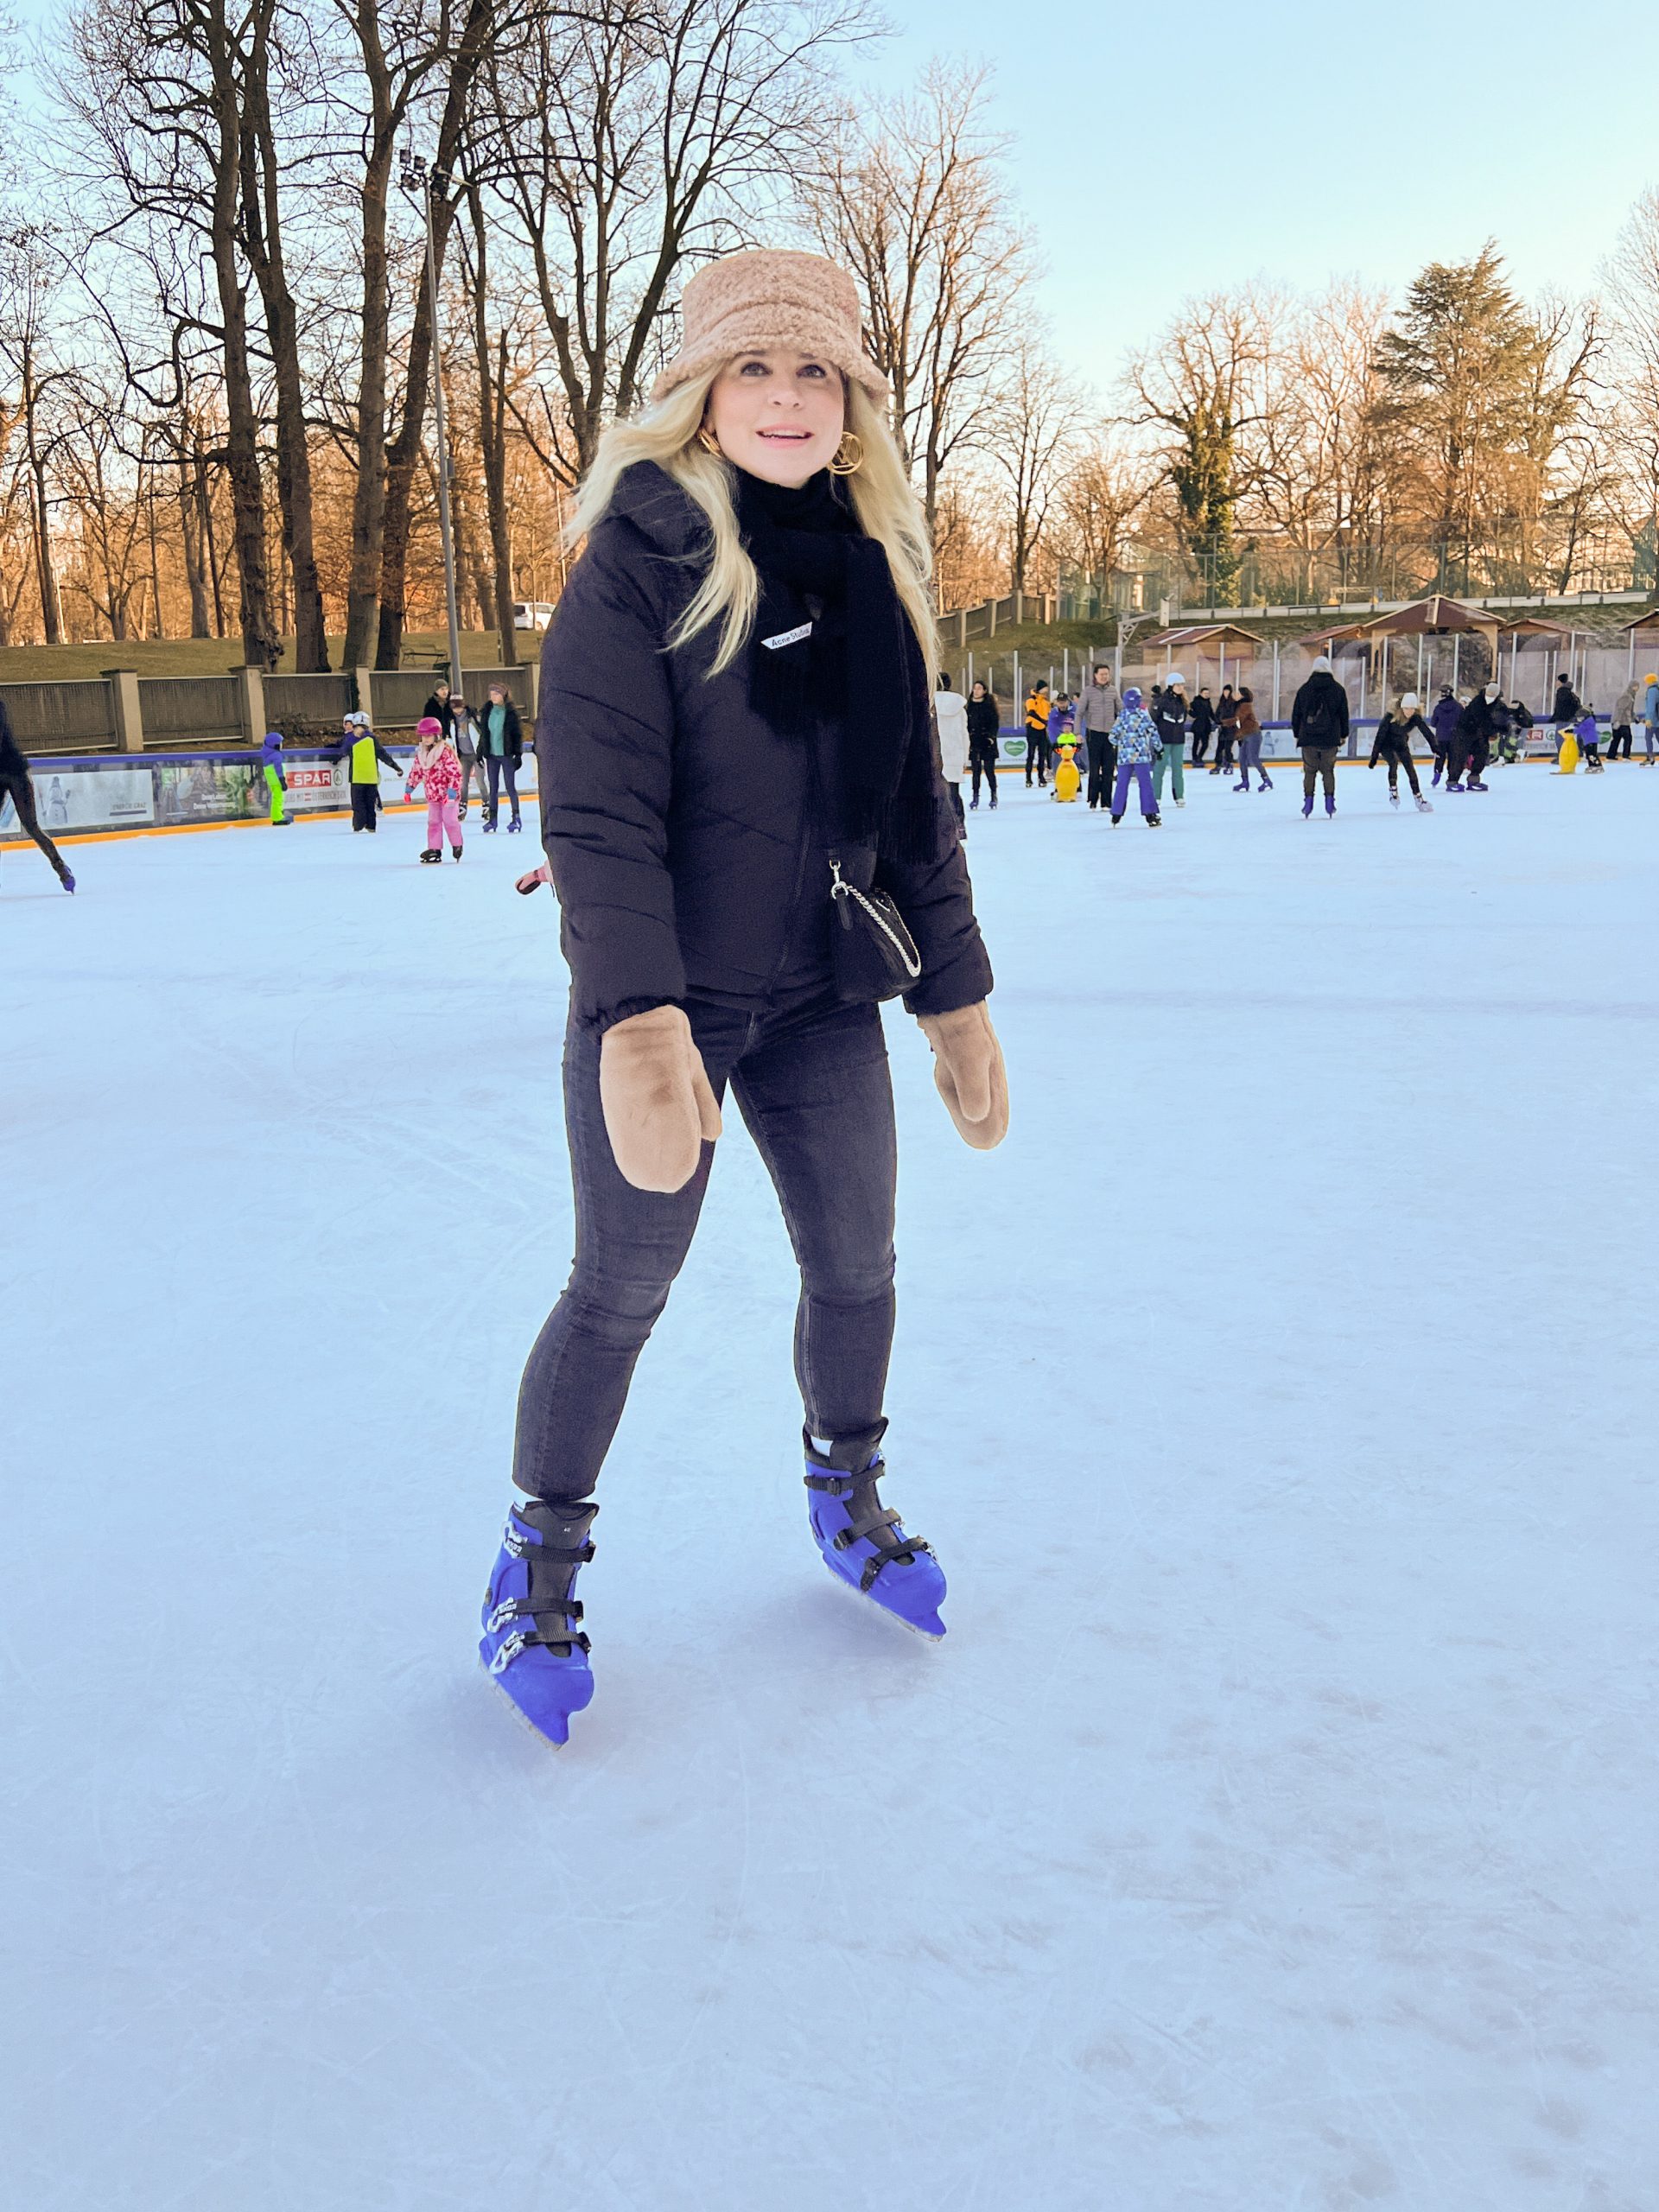 junge Frau mit schwarzer Jacke, schwarzem Schal und beigen Handschuhen und Mütze sowie blauen Eislaufschuhen am Eislaufplatz der Grazer Winterwelt, im Hintergrund andere Eisläuferinnen und Eisläufer